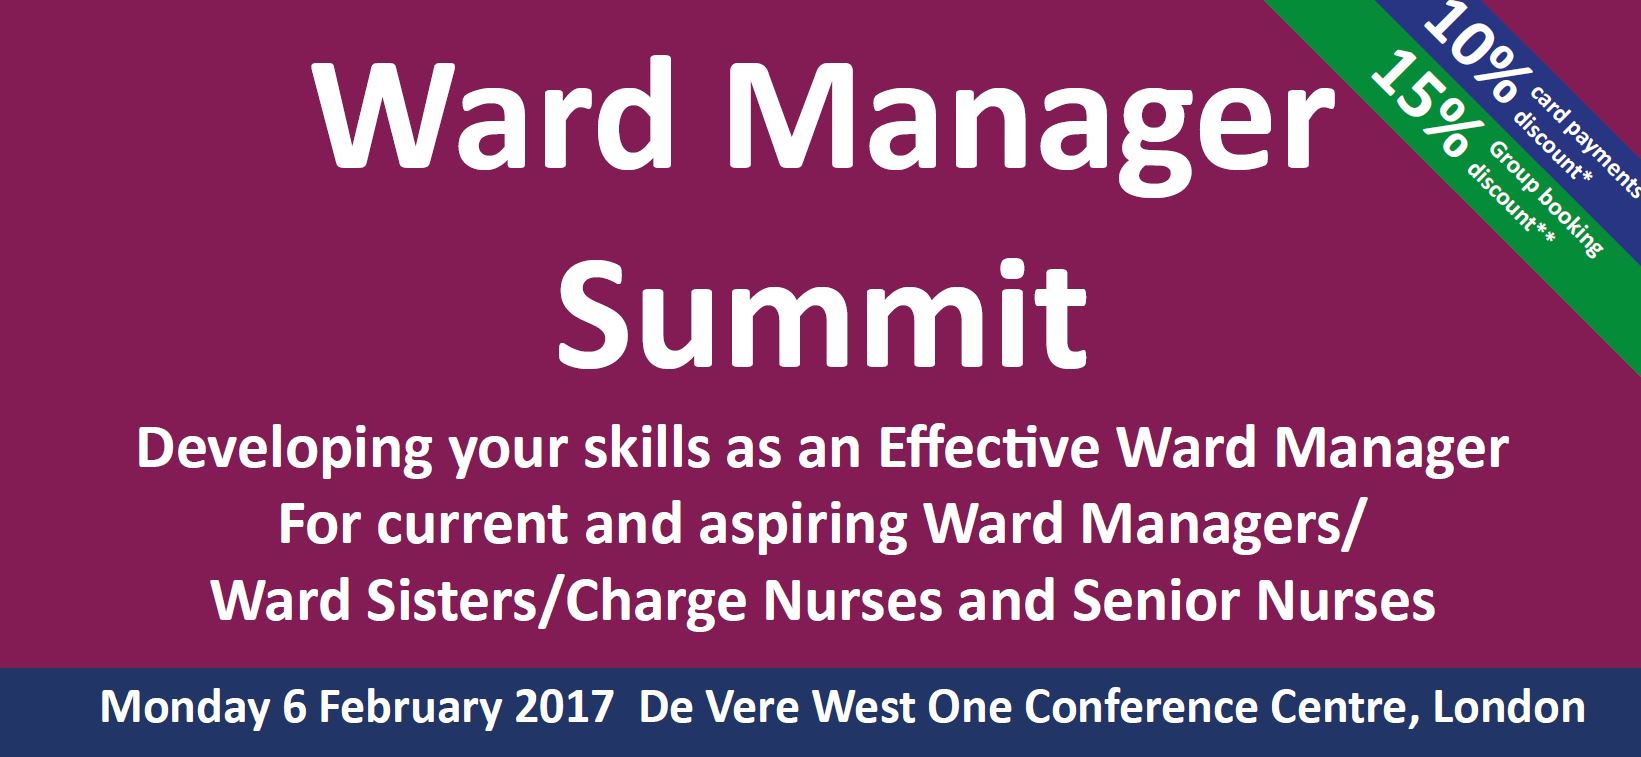 2017-02-06 Ward Manager Summit header